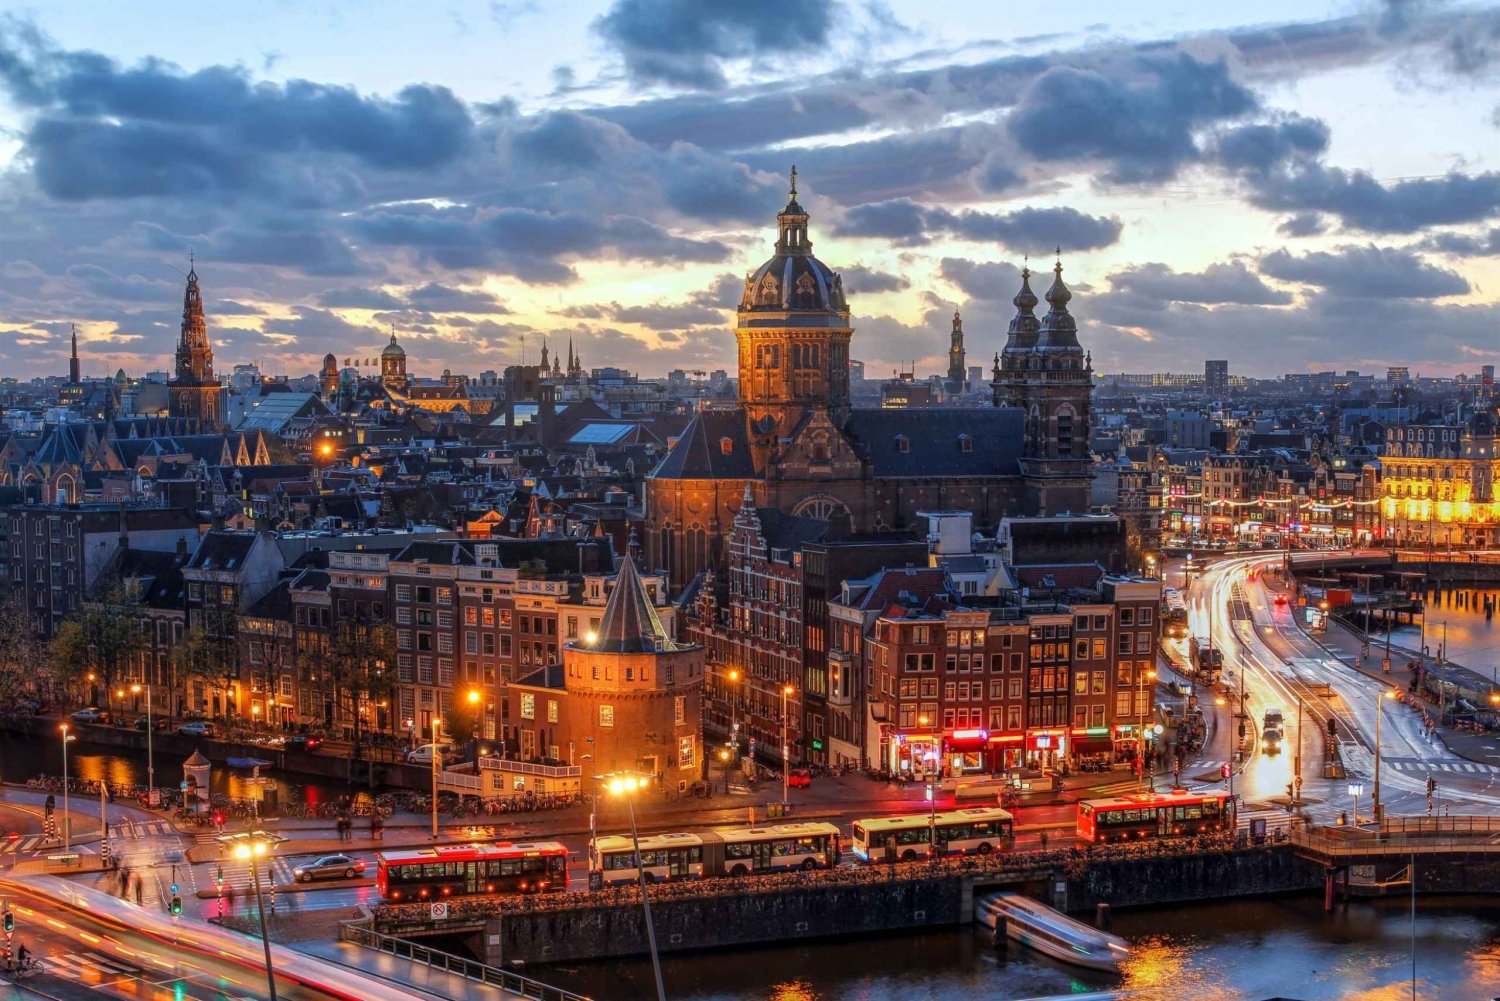 Amsterdam: Wycieczka po dzielnicy czerwonych latarni po zmroku